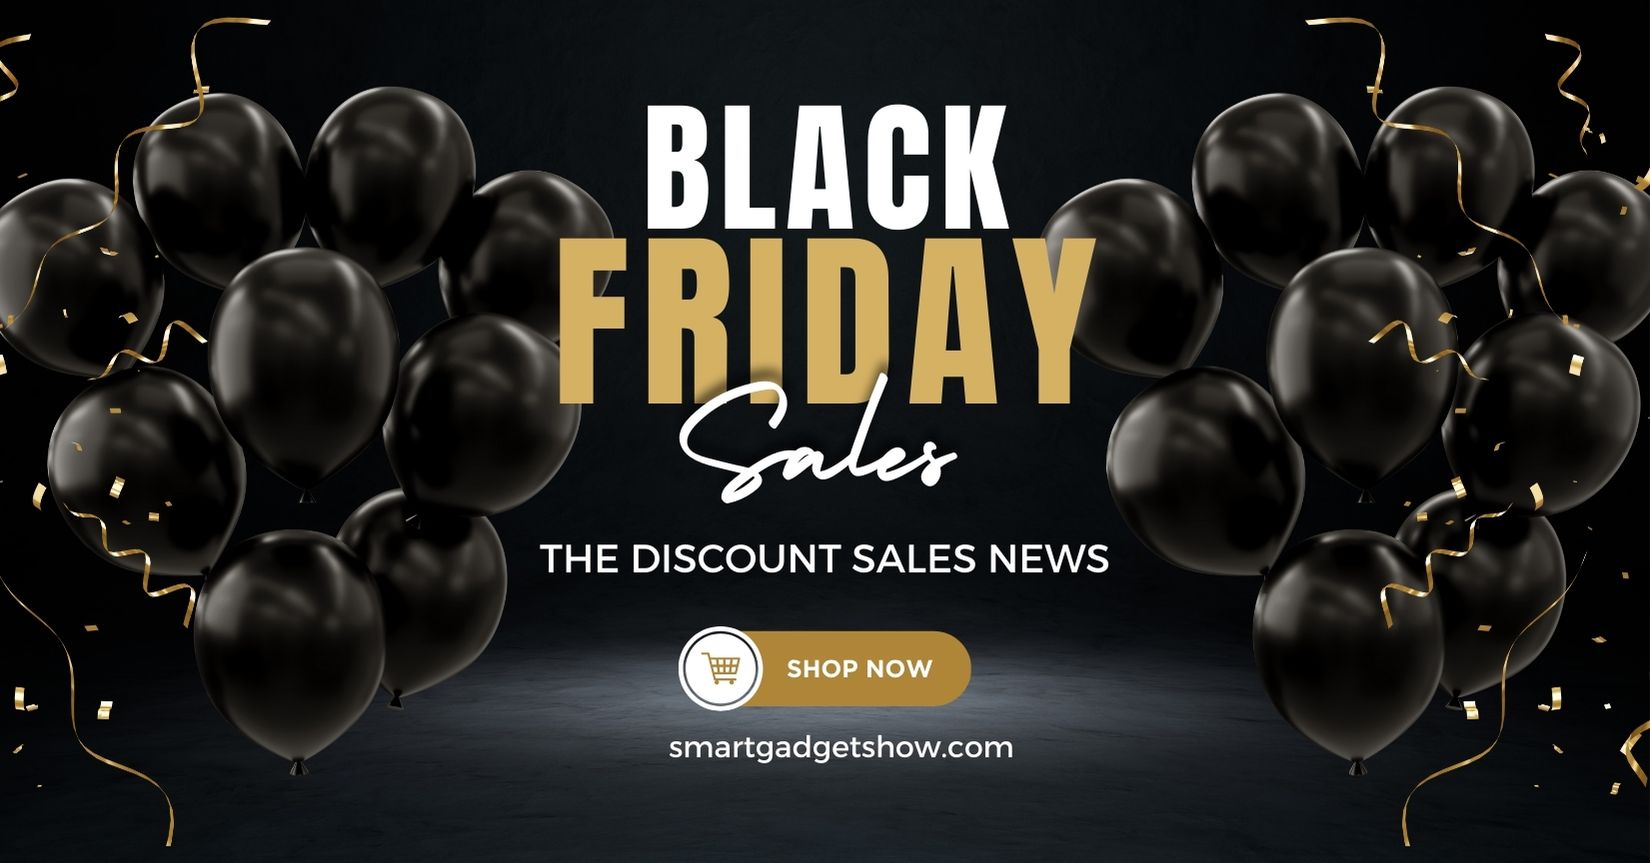 Black November Friday sales have started